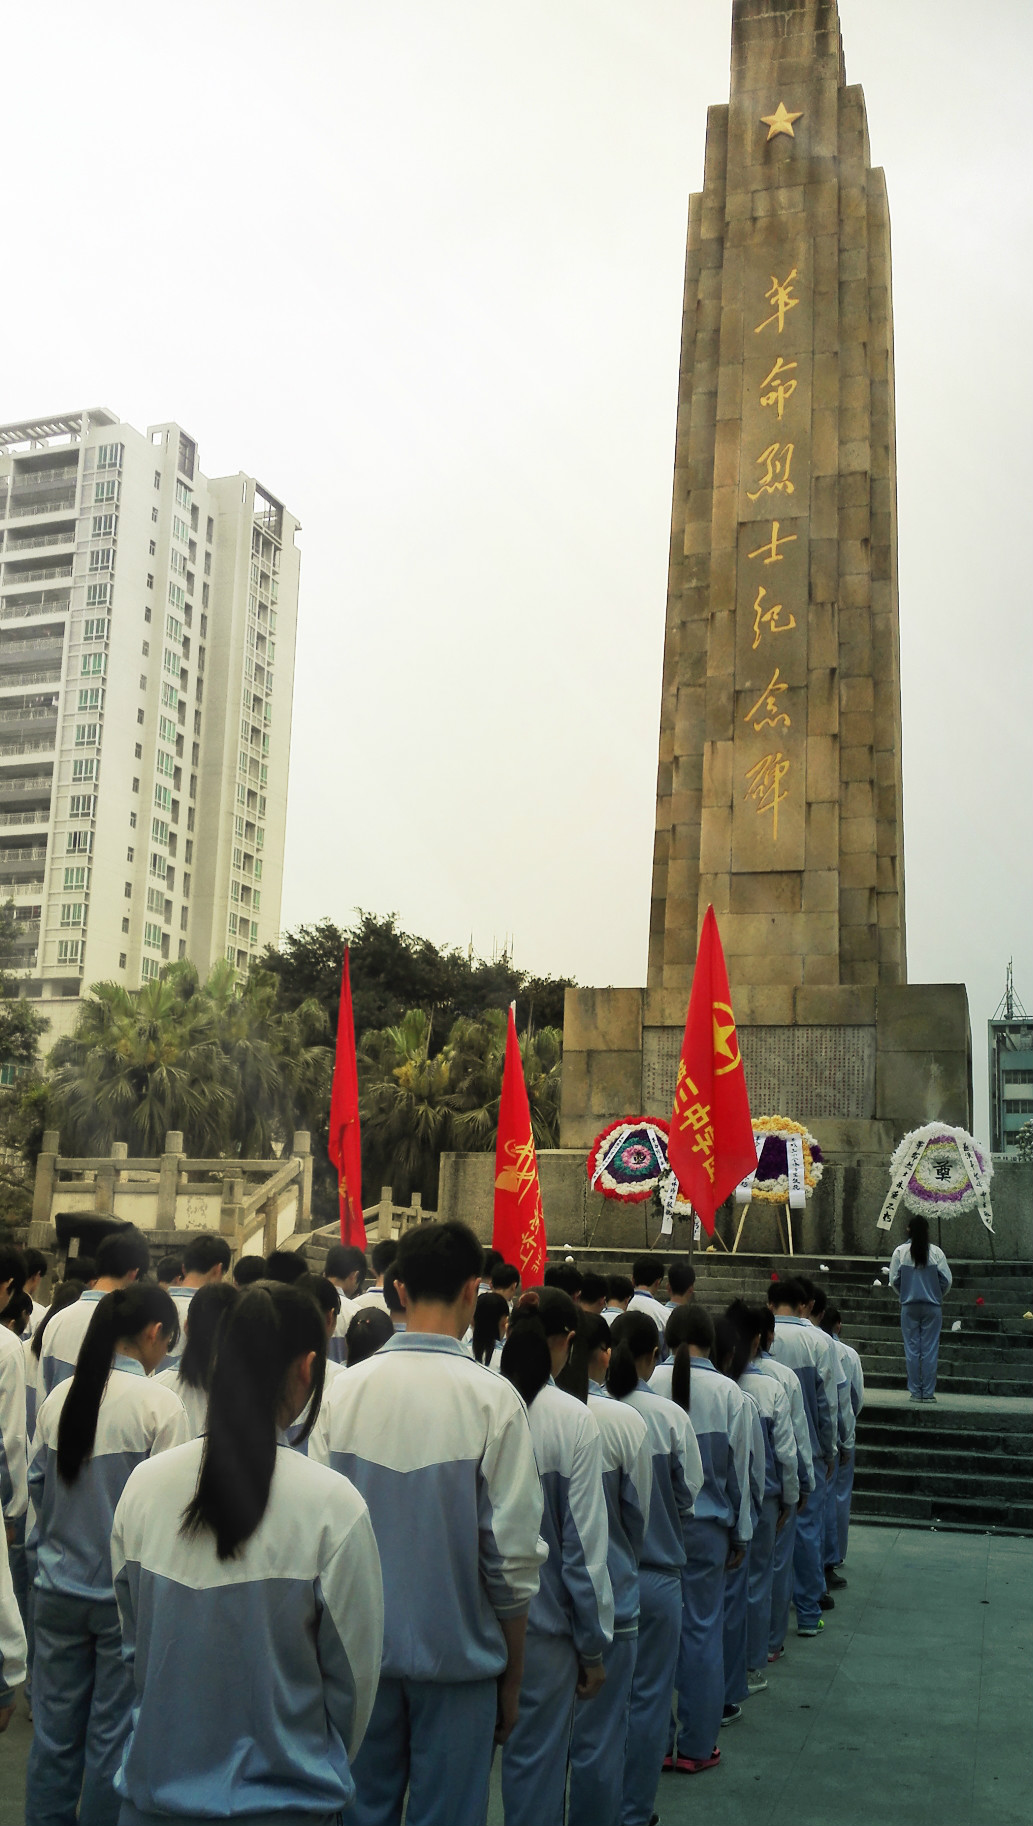 遂溪革命烈士纪念碑图片